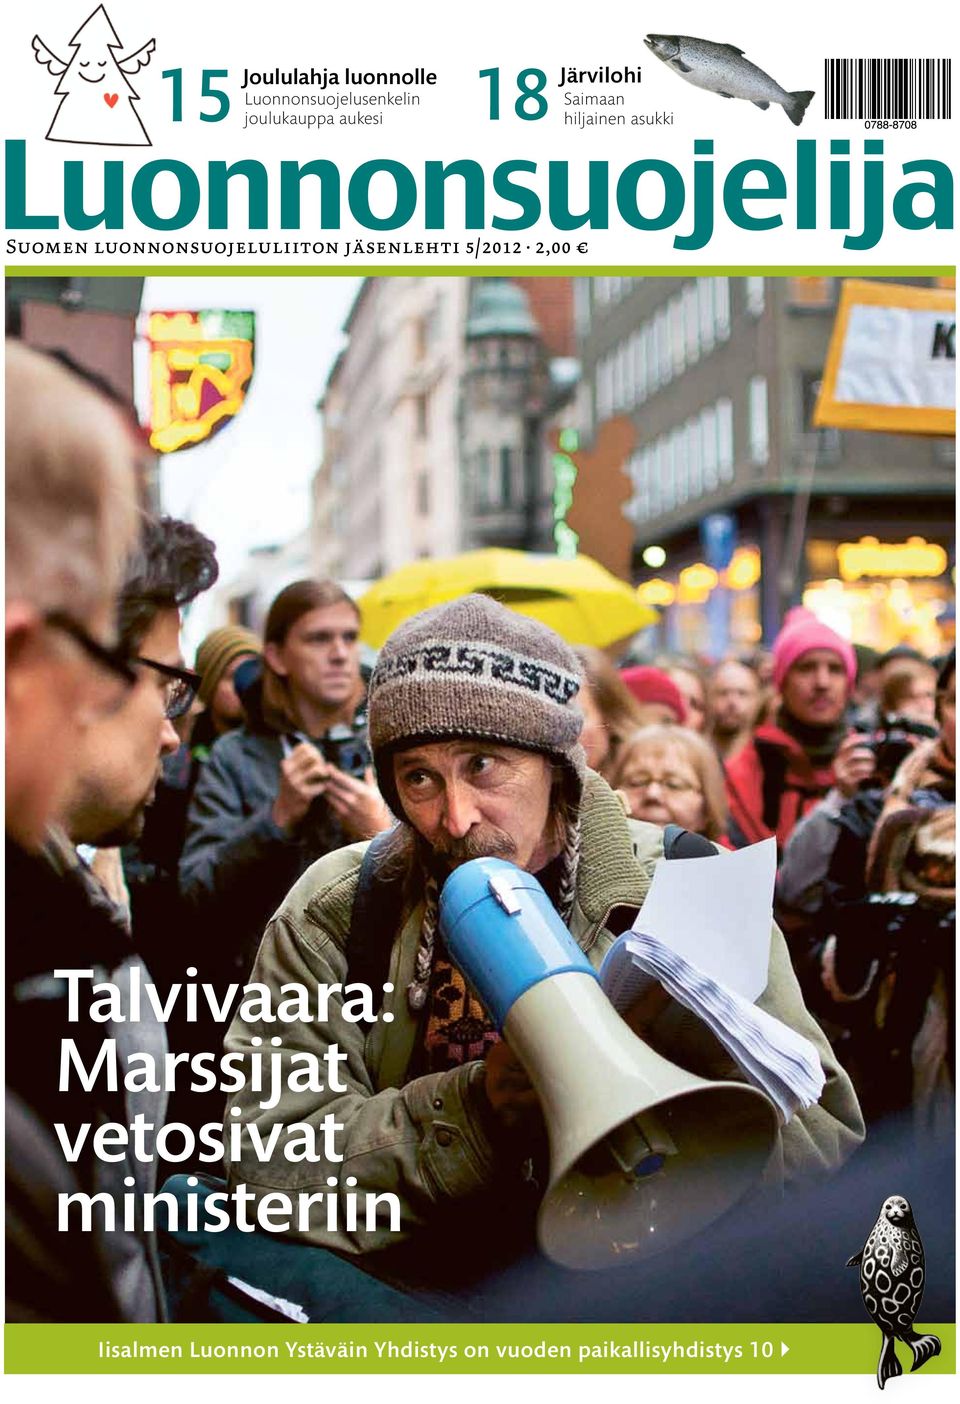 asukki Suomen luonnonsuojeluliiton jäsenlehti 5/2012 2,00 Talvivaara: